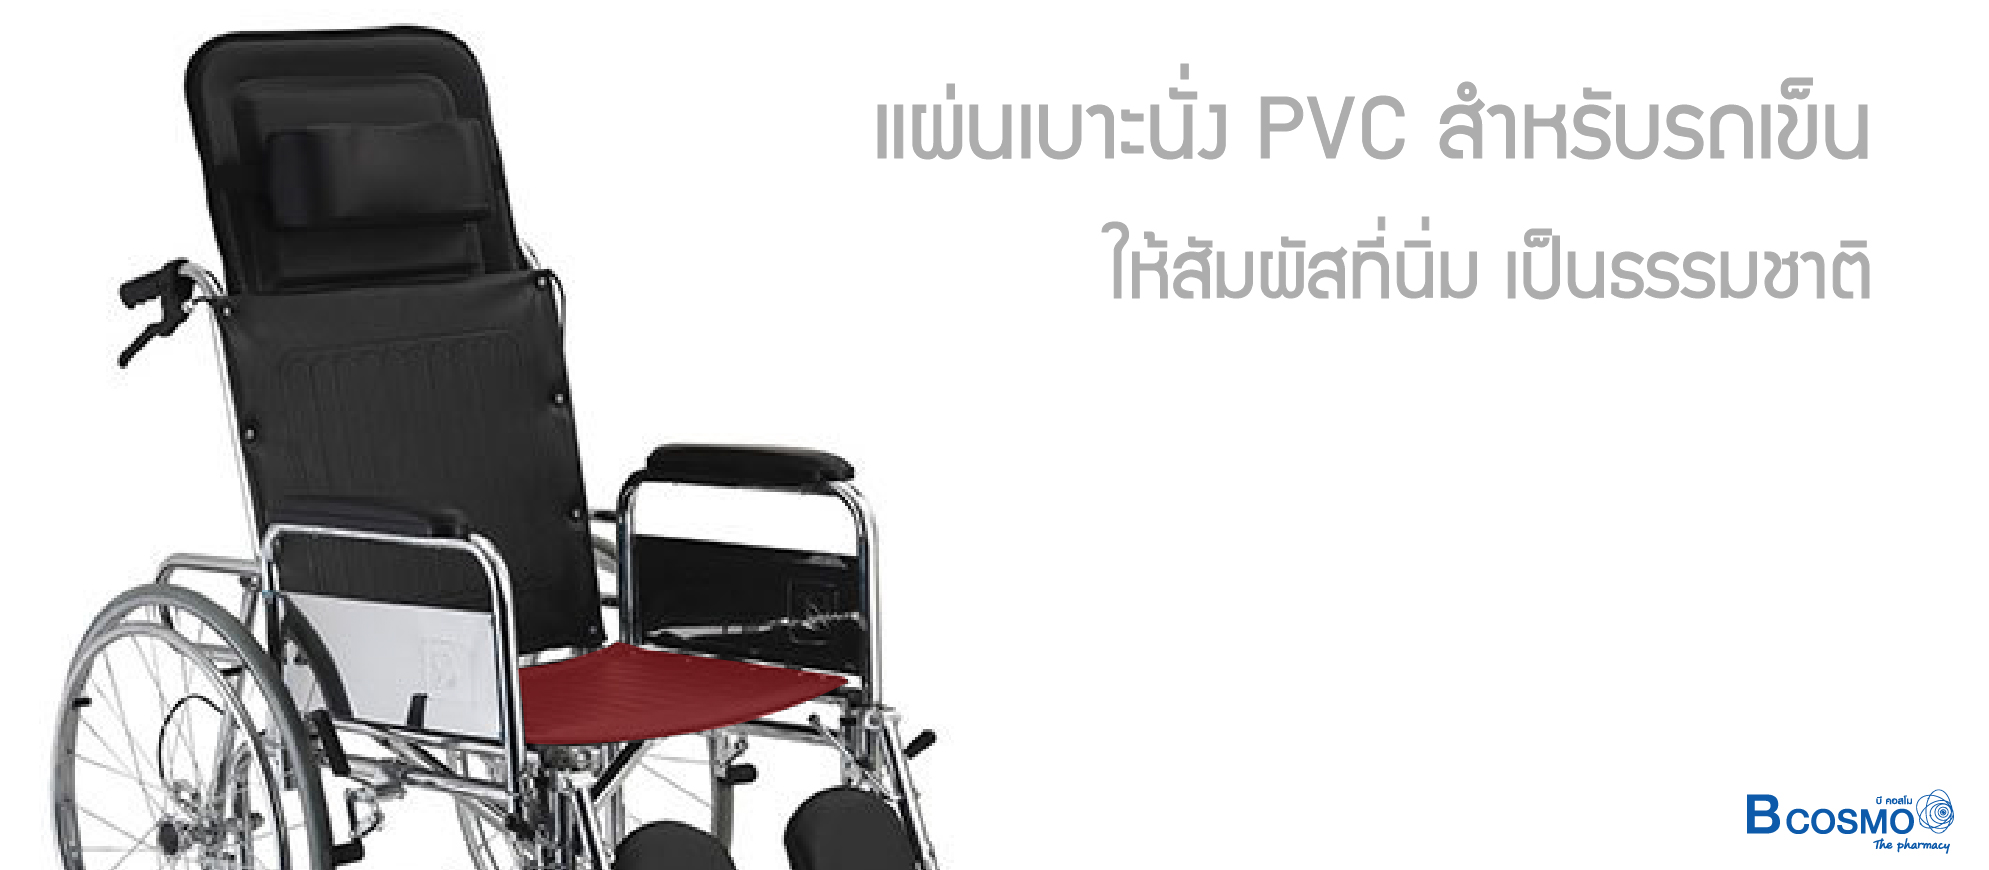 แผ่นเบาะนั่ง PVC สำหรับรถเข็น 809 Size 40x50.5 cm. สีดำ